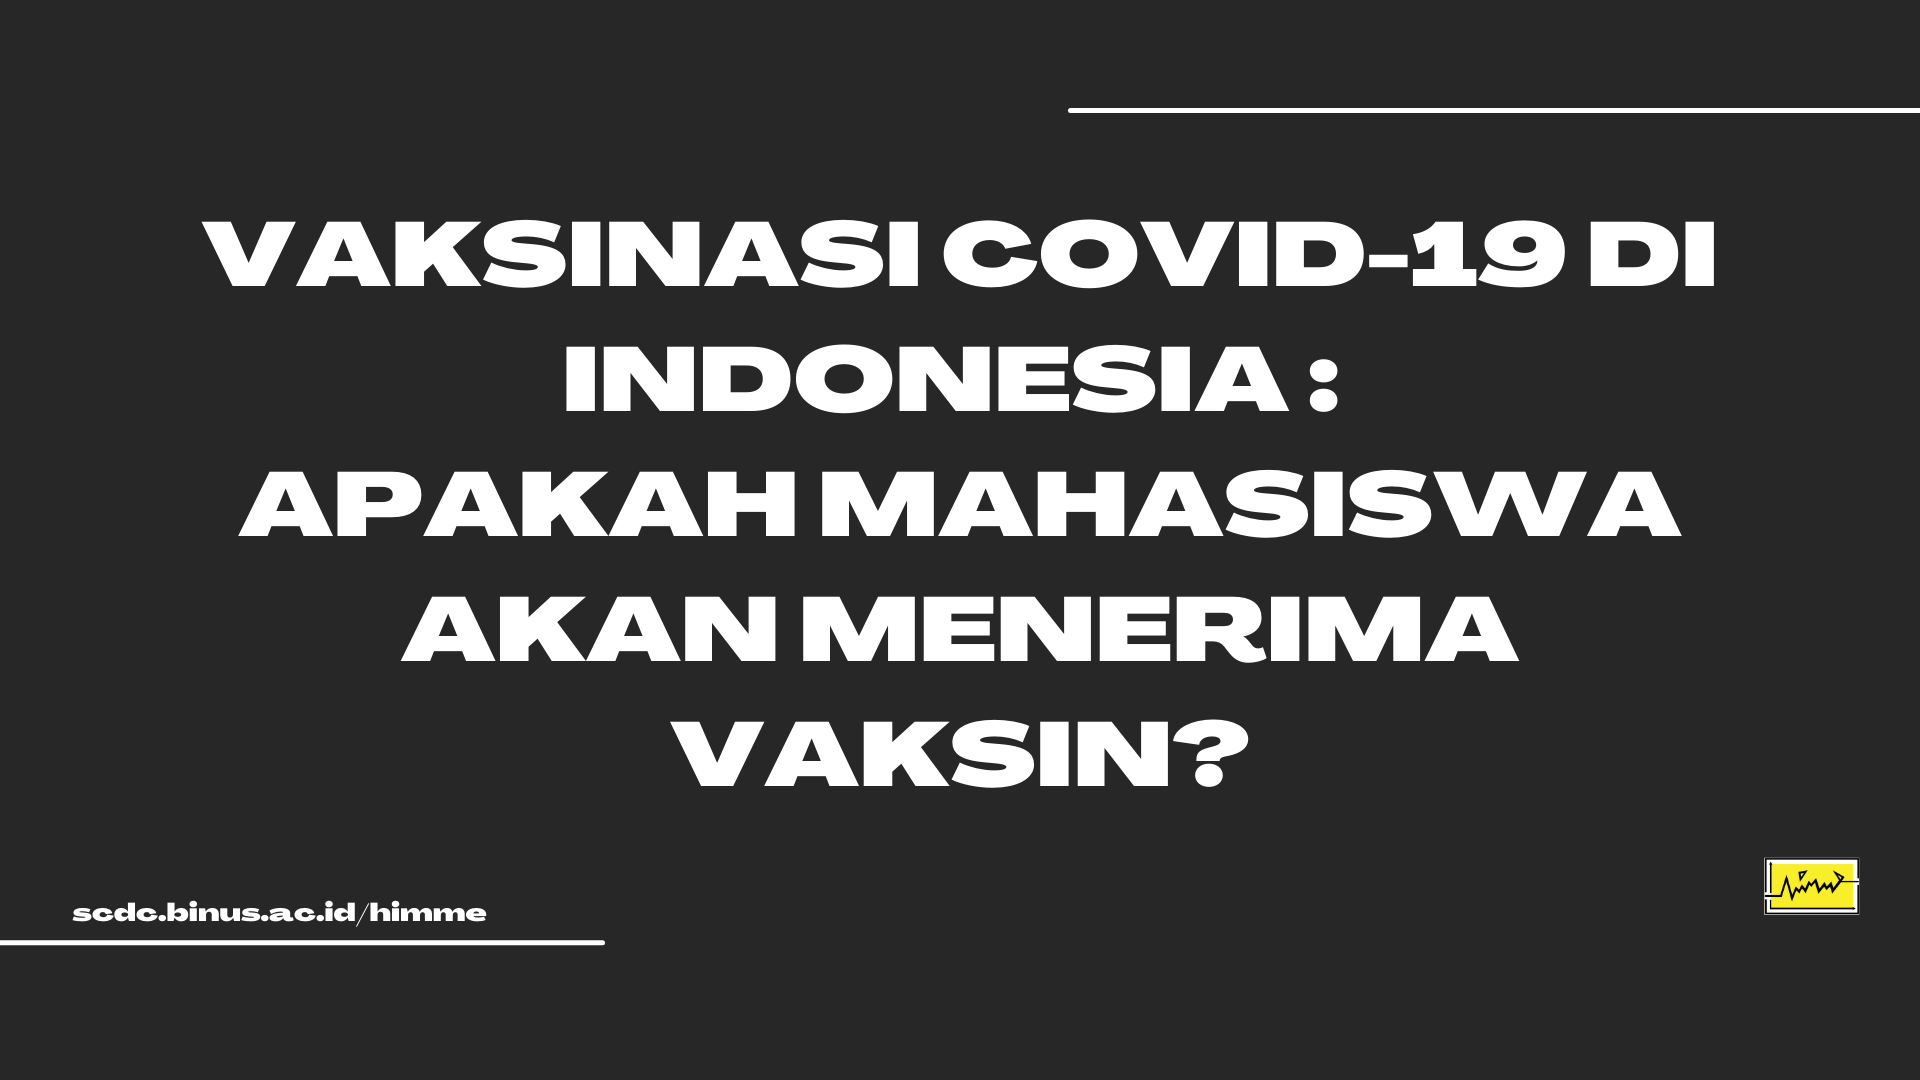 Vaksinasi Covid-19 di Indonesia : Apakah Mahasiswa Akan Menerima Vaksin